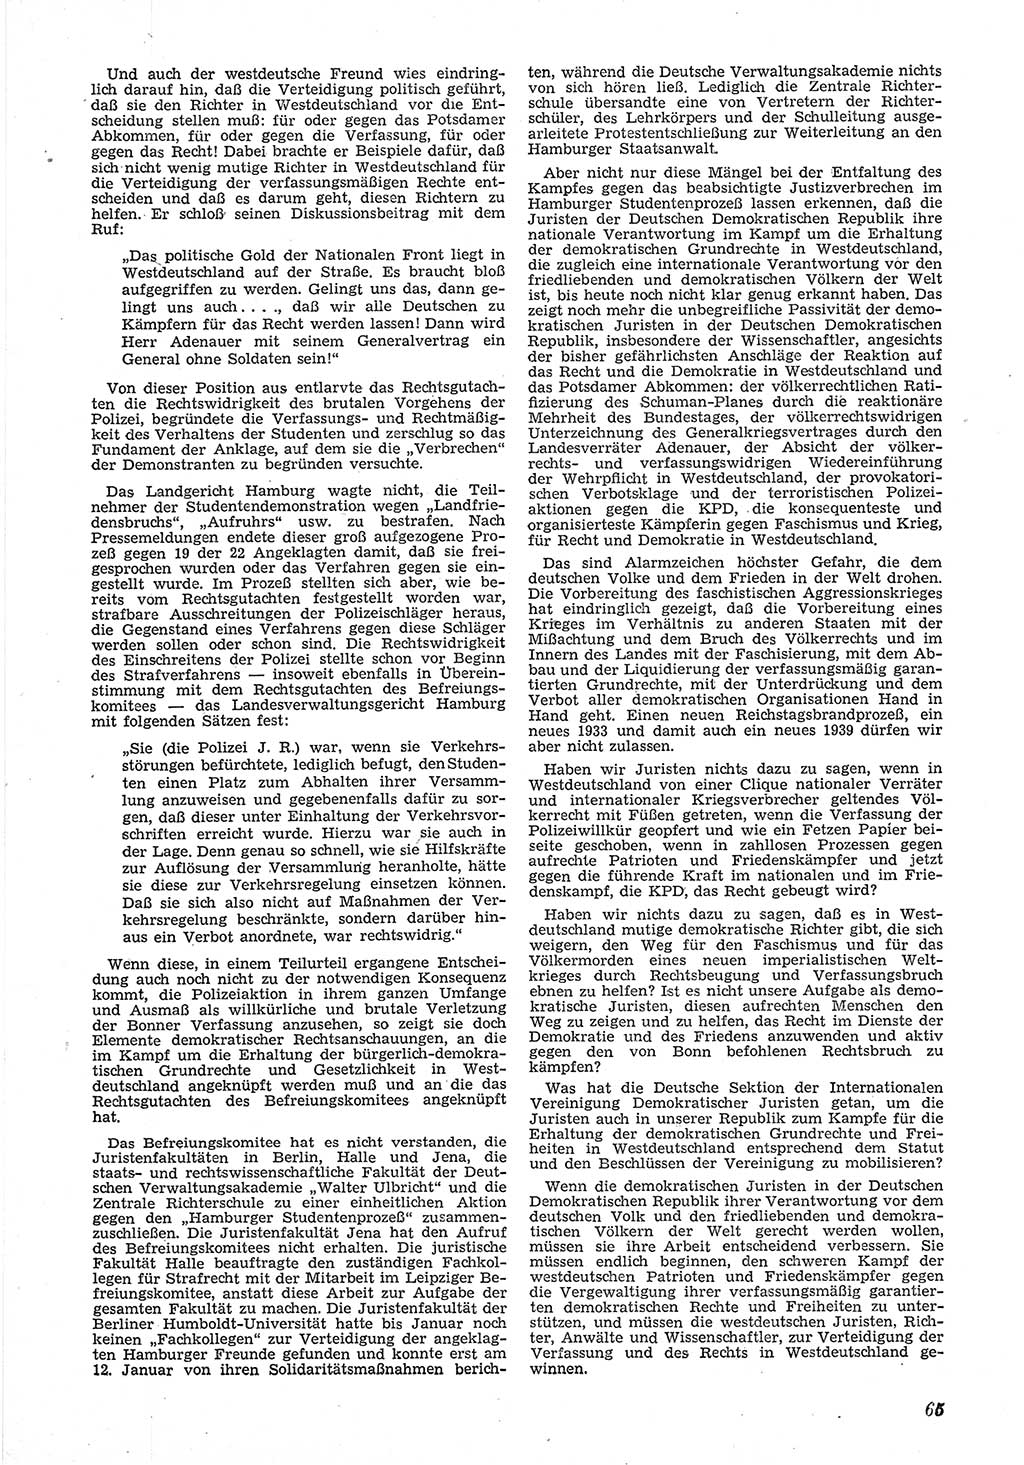 Neue Justiz (NJ), Zeitschrift für Recht und Rechtswissenschaft [Deutsche Demokratische Republik (DDR)], 6. Jahrgang 1952, Seite 65 (NJ DDR 1952, S. 65)